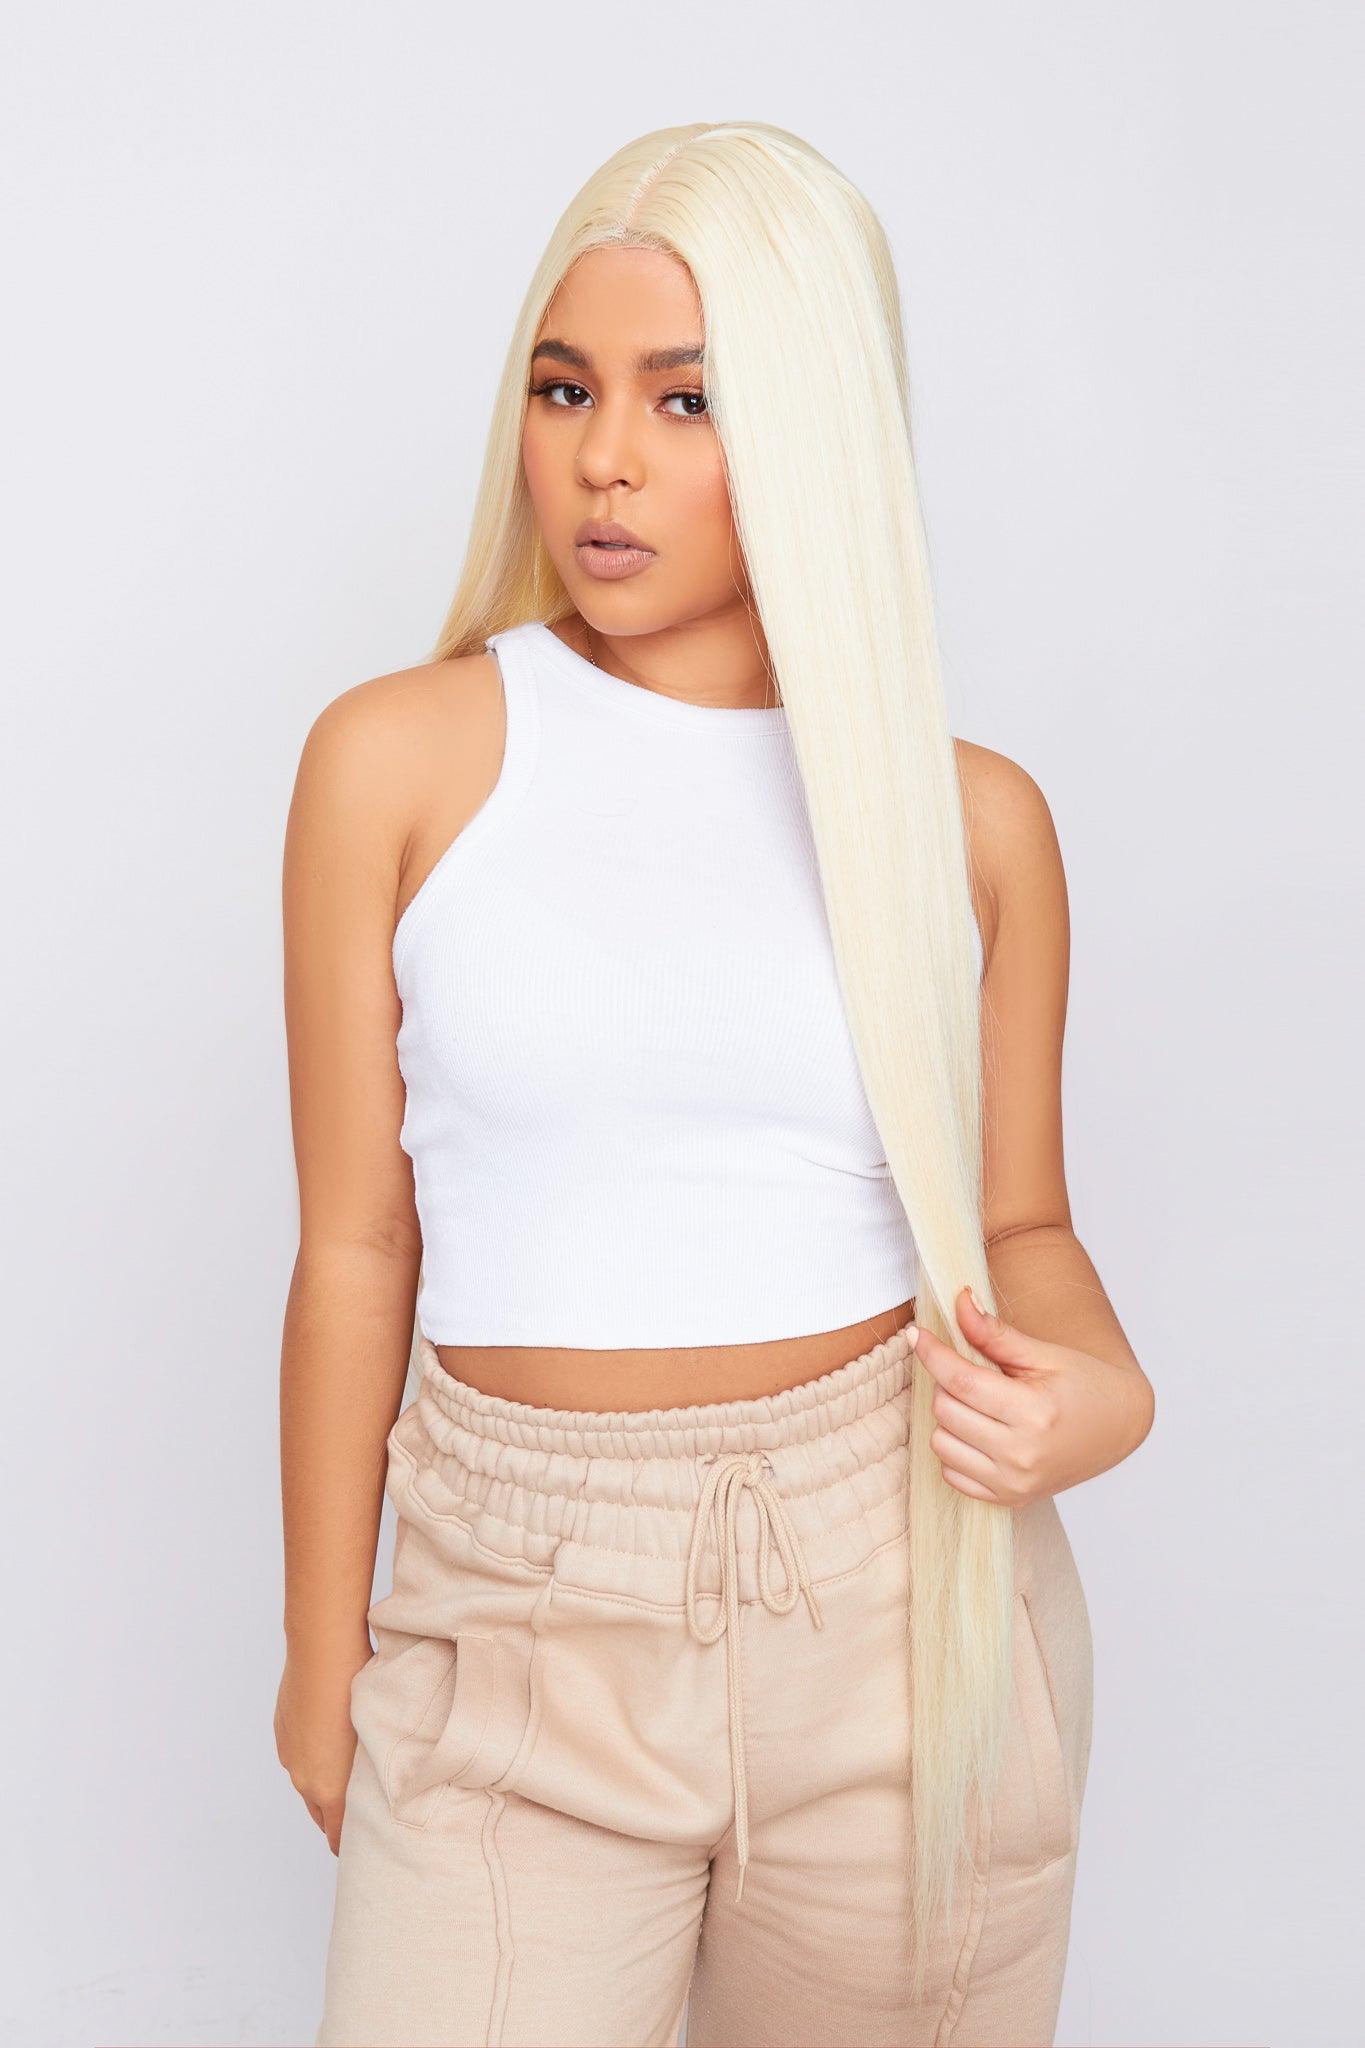 bleach blonde PBeauty hair wig worn by model 